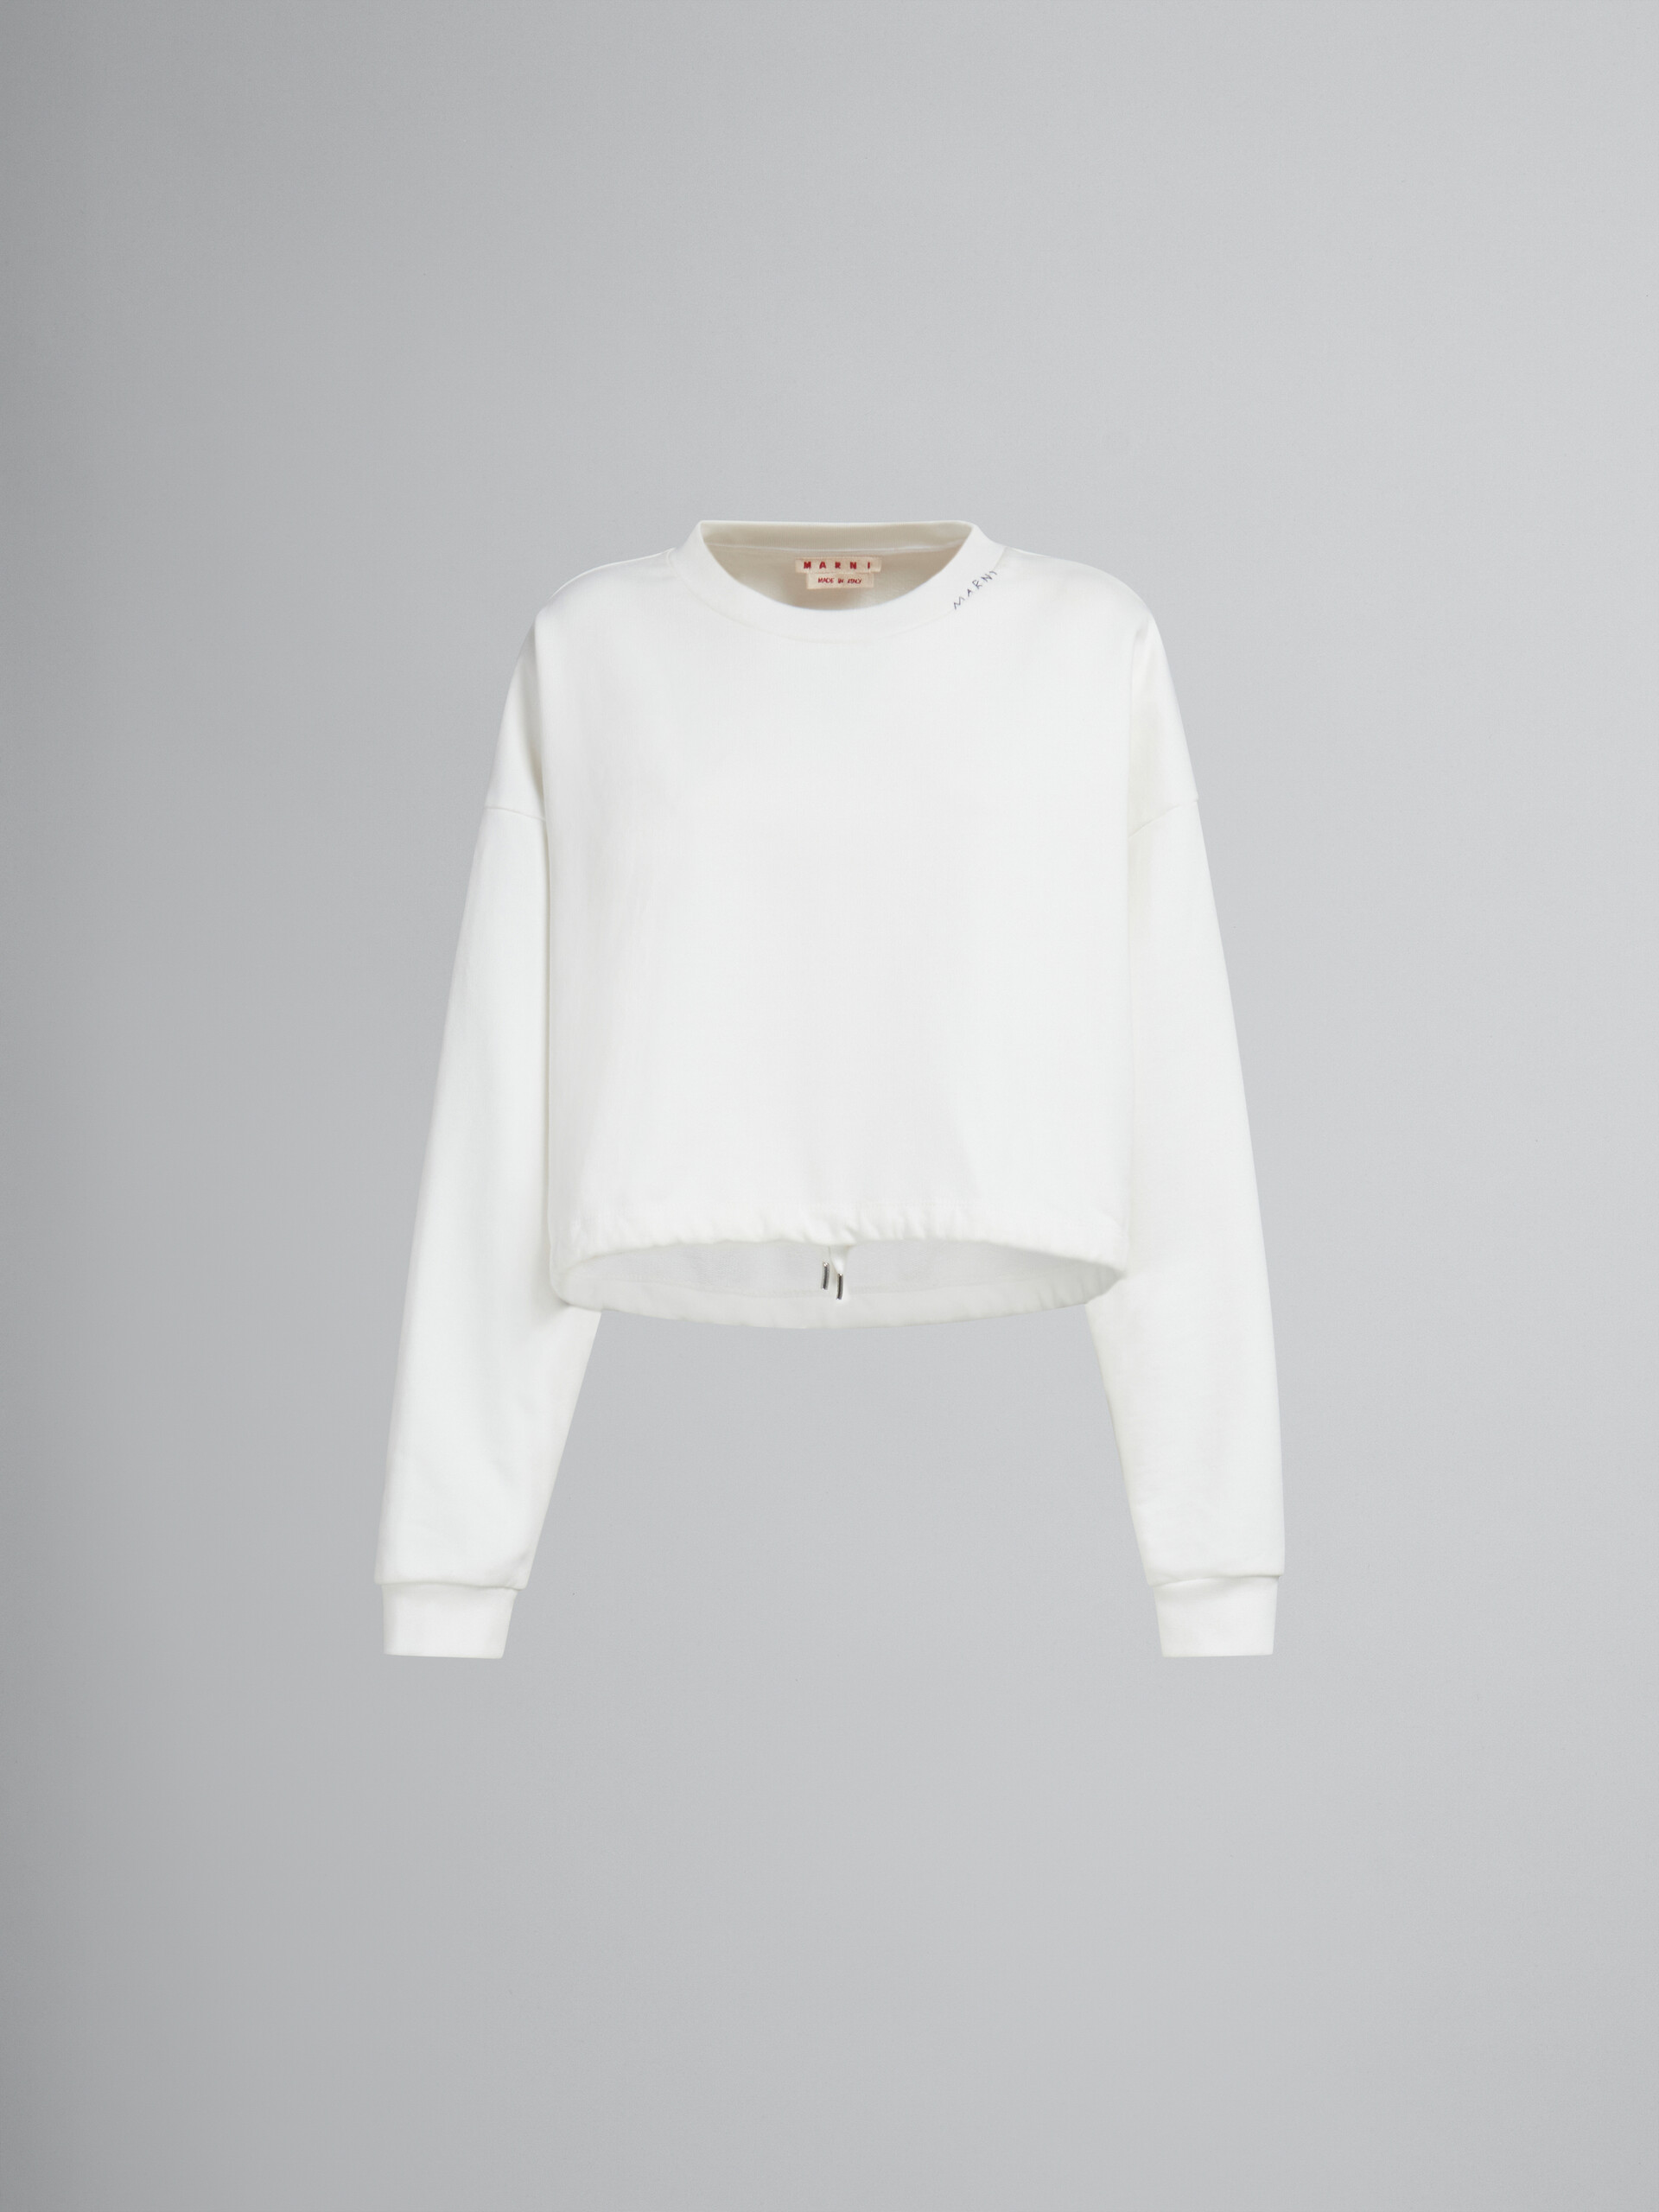 Sweat-shirt en coton biologique blanc avec cordon coulissant à l’ourlet - Maille - Image 1